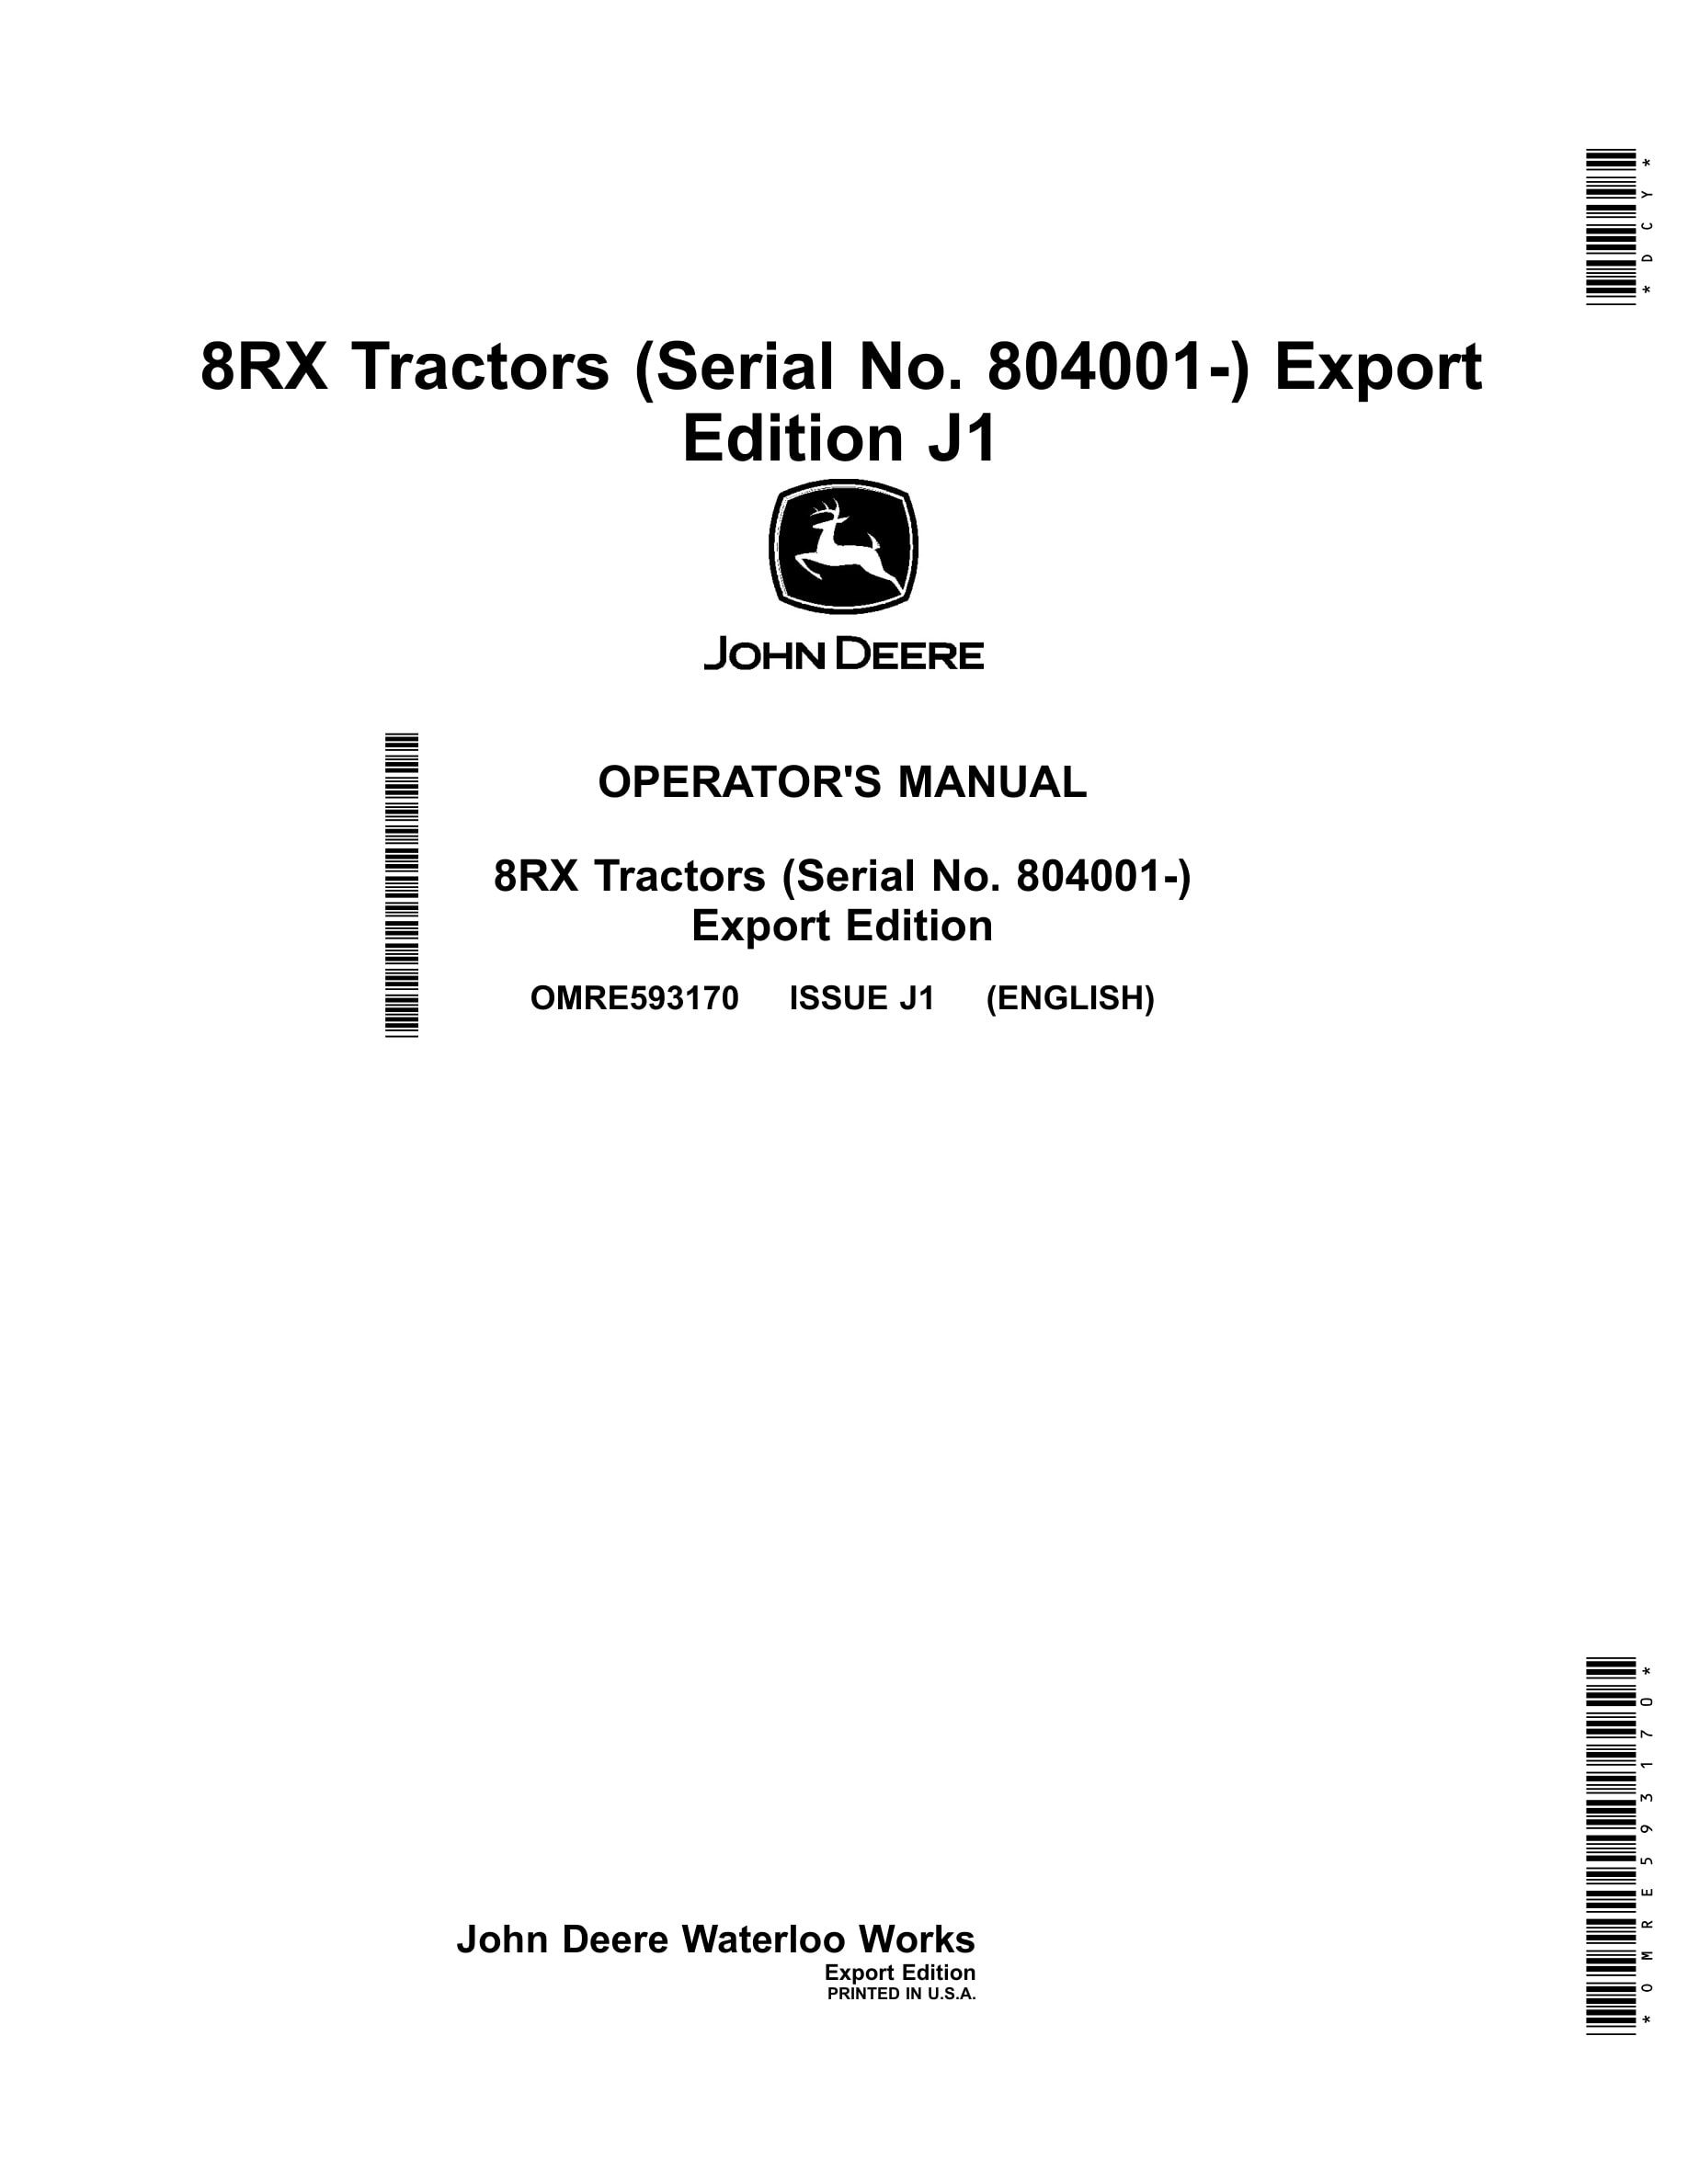 John Deere 8rx Tractors Operator Manuals OMRE593170-1